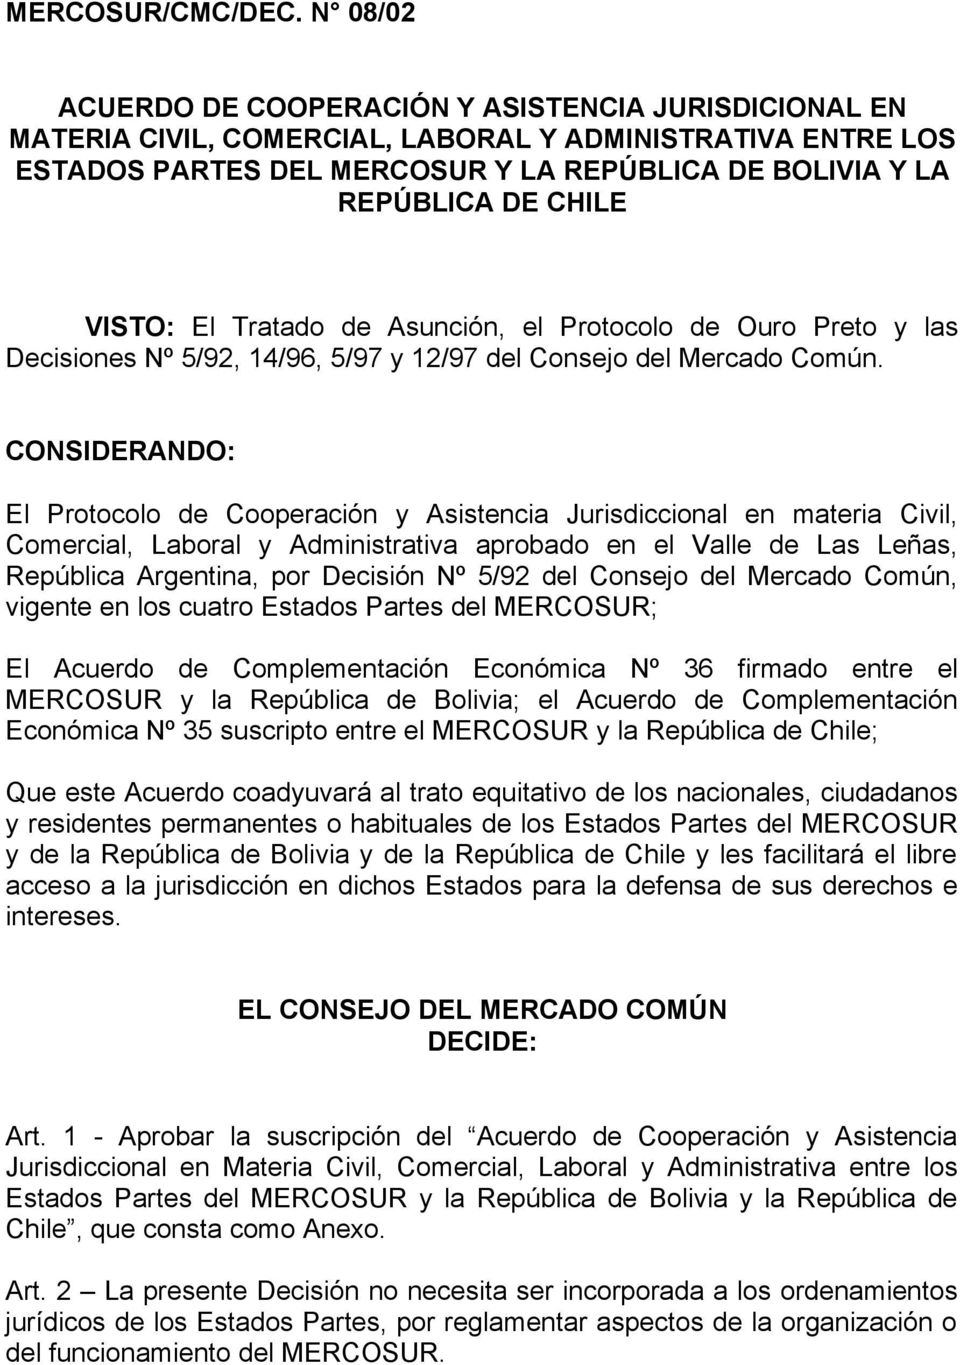 VISTO: El Tratado de Asunción, el Protocolo de Ouro Preto y las Decisiones Nº 5/92, 14/96, 5/97 y 12/97 del Consejo del Mercado Común.